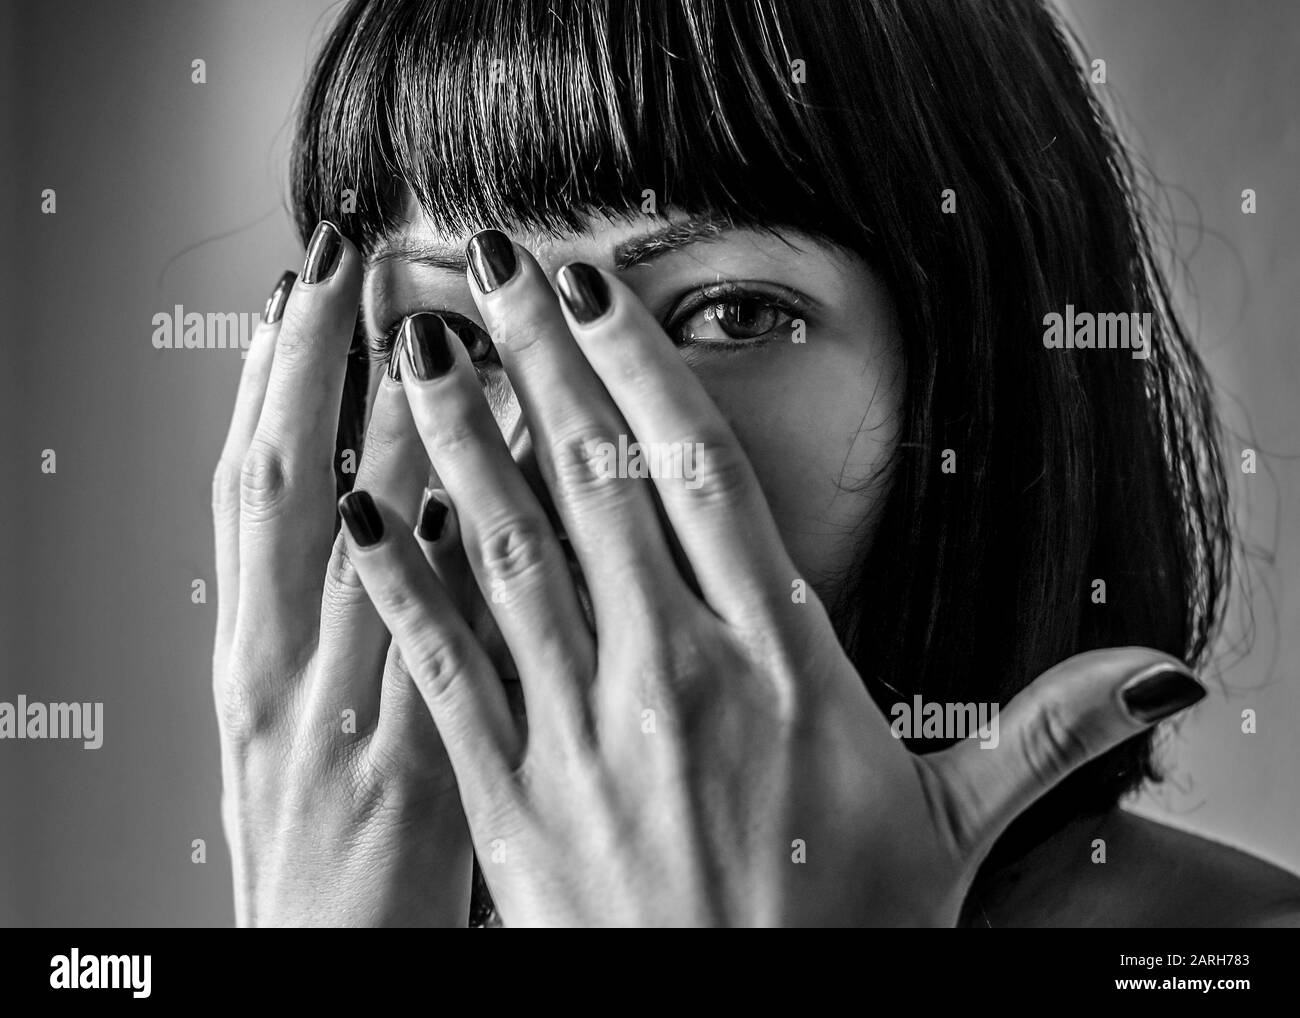 Portrait de la femme en noir et blanc se cachant face Banque D'Images